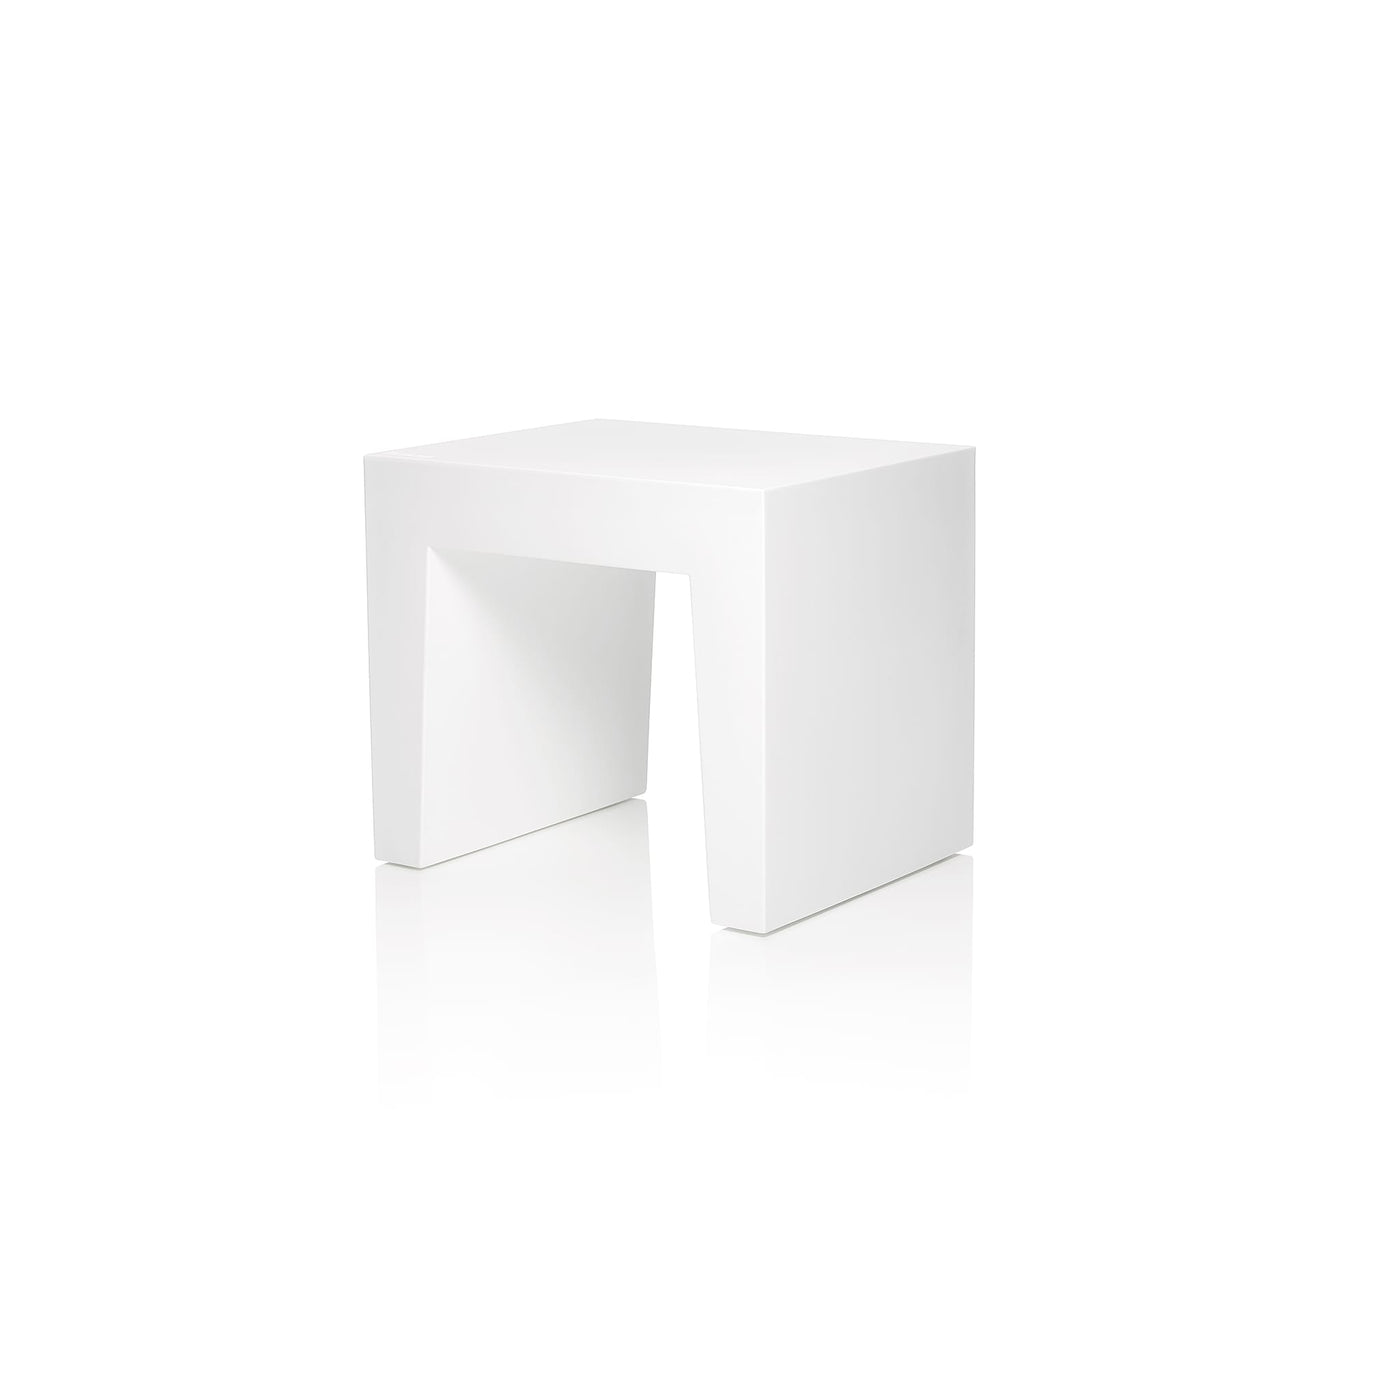 Découvrez le tabouret Concrete de Fatboy, inspiré par le béton pour un design robuste et polyvalent, parfait pour l'intérieur et l'extérieur. Blanc.